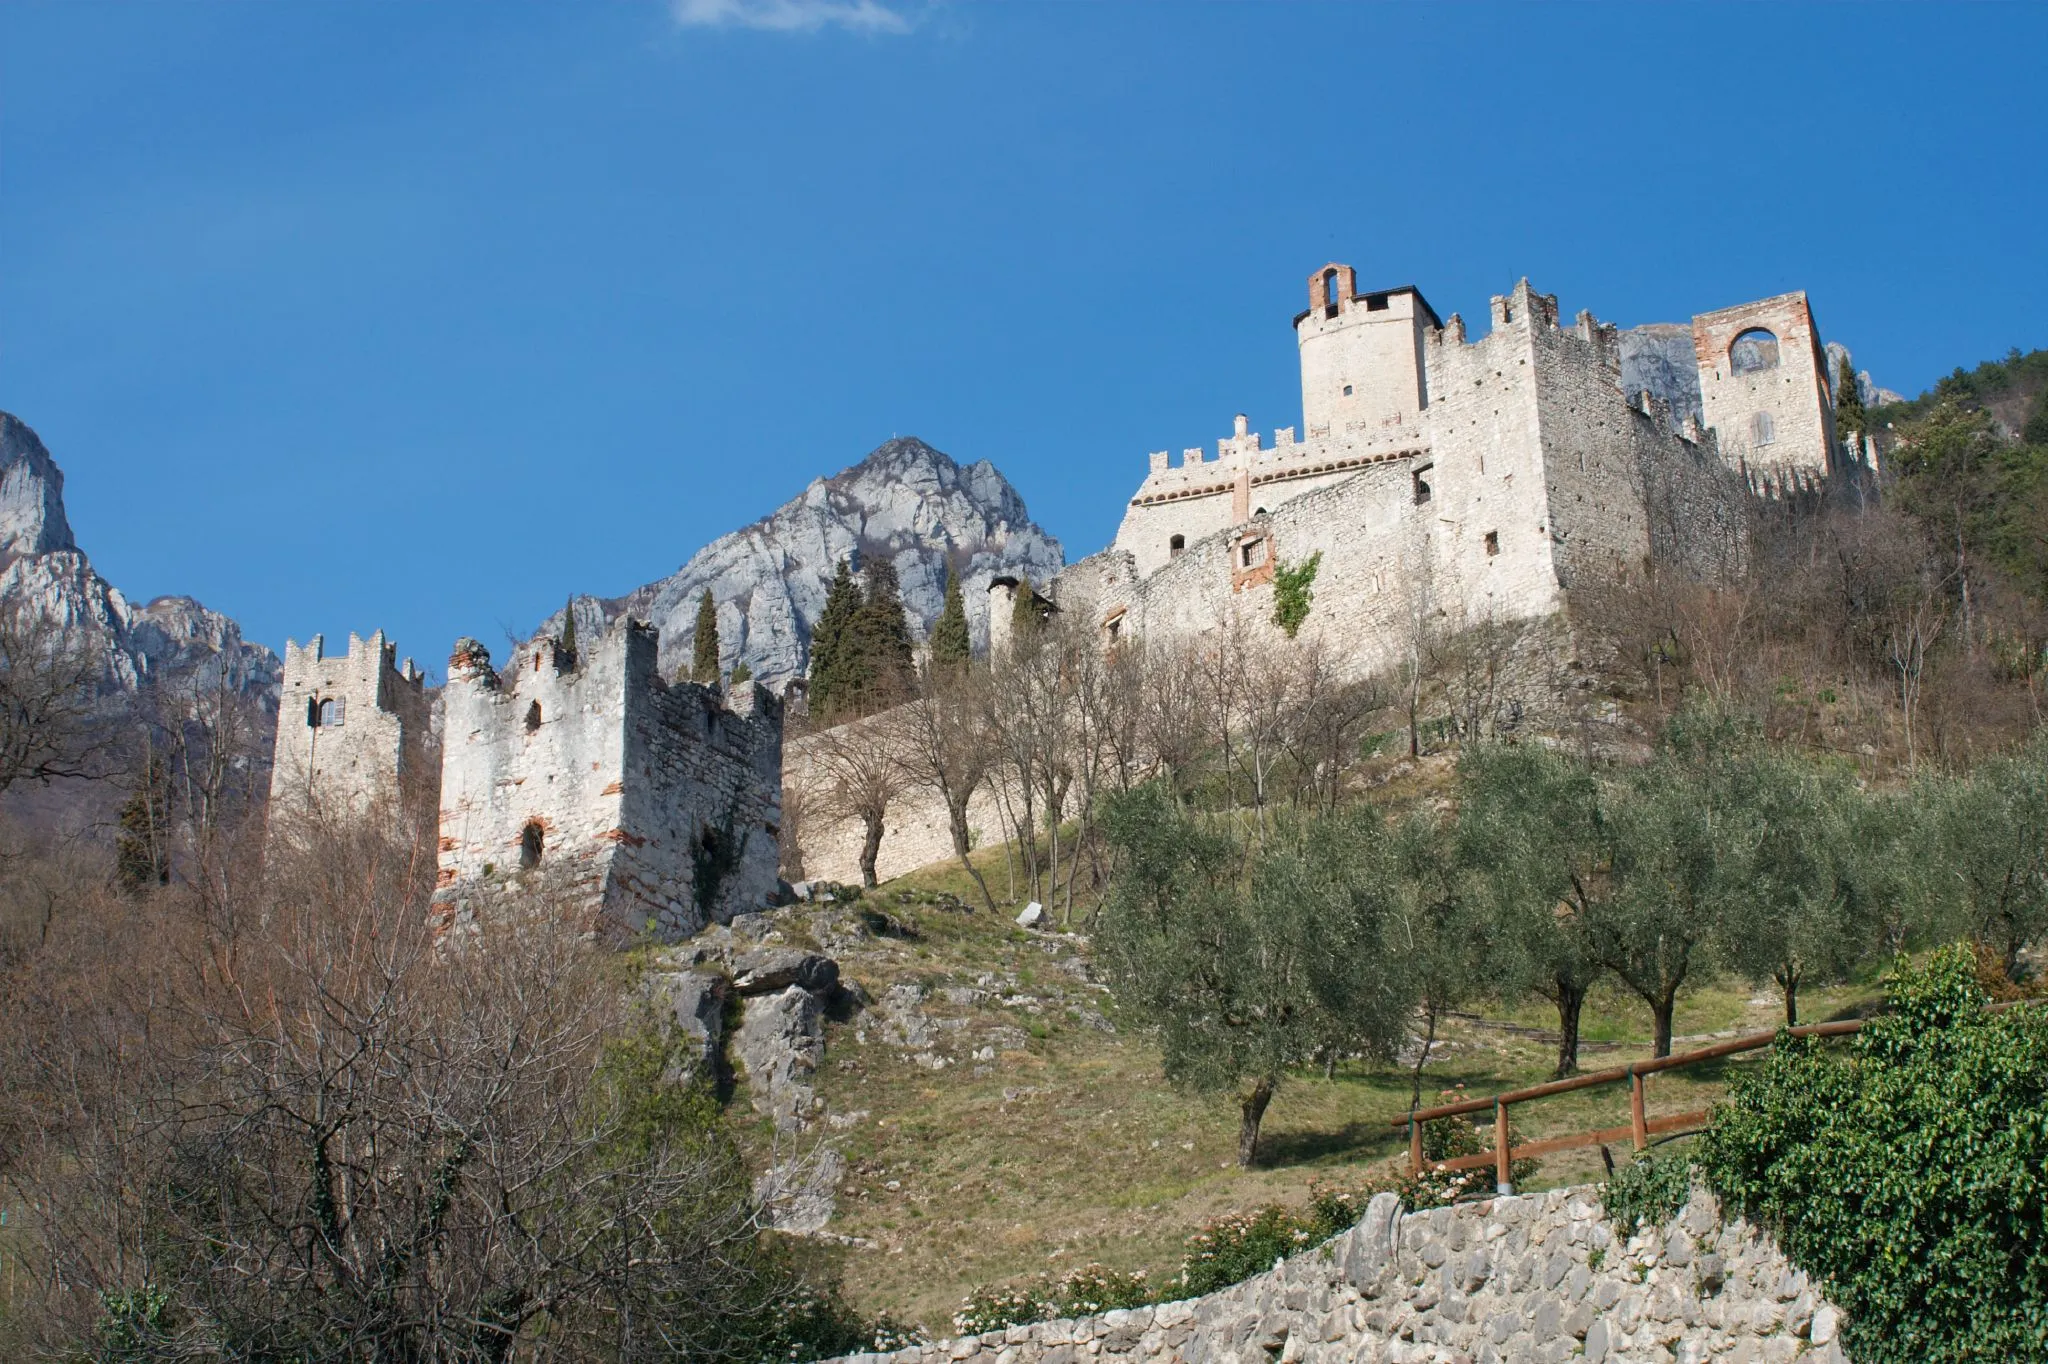 Photo showing: Il castello di avio. Avio, Trentino-Alto Adige. – Una vista del castello di avio dalla parte bassa.